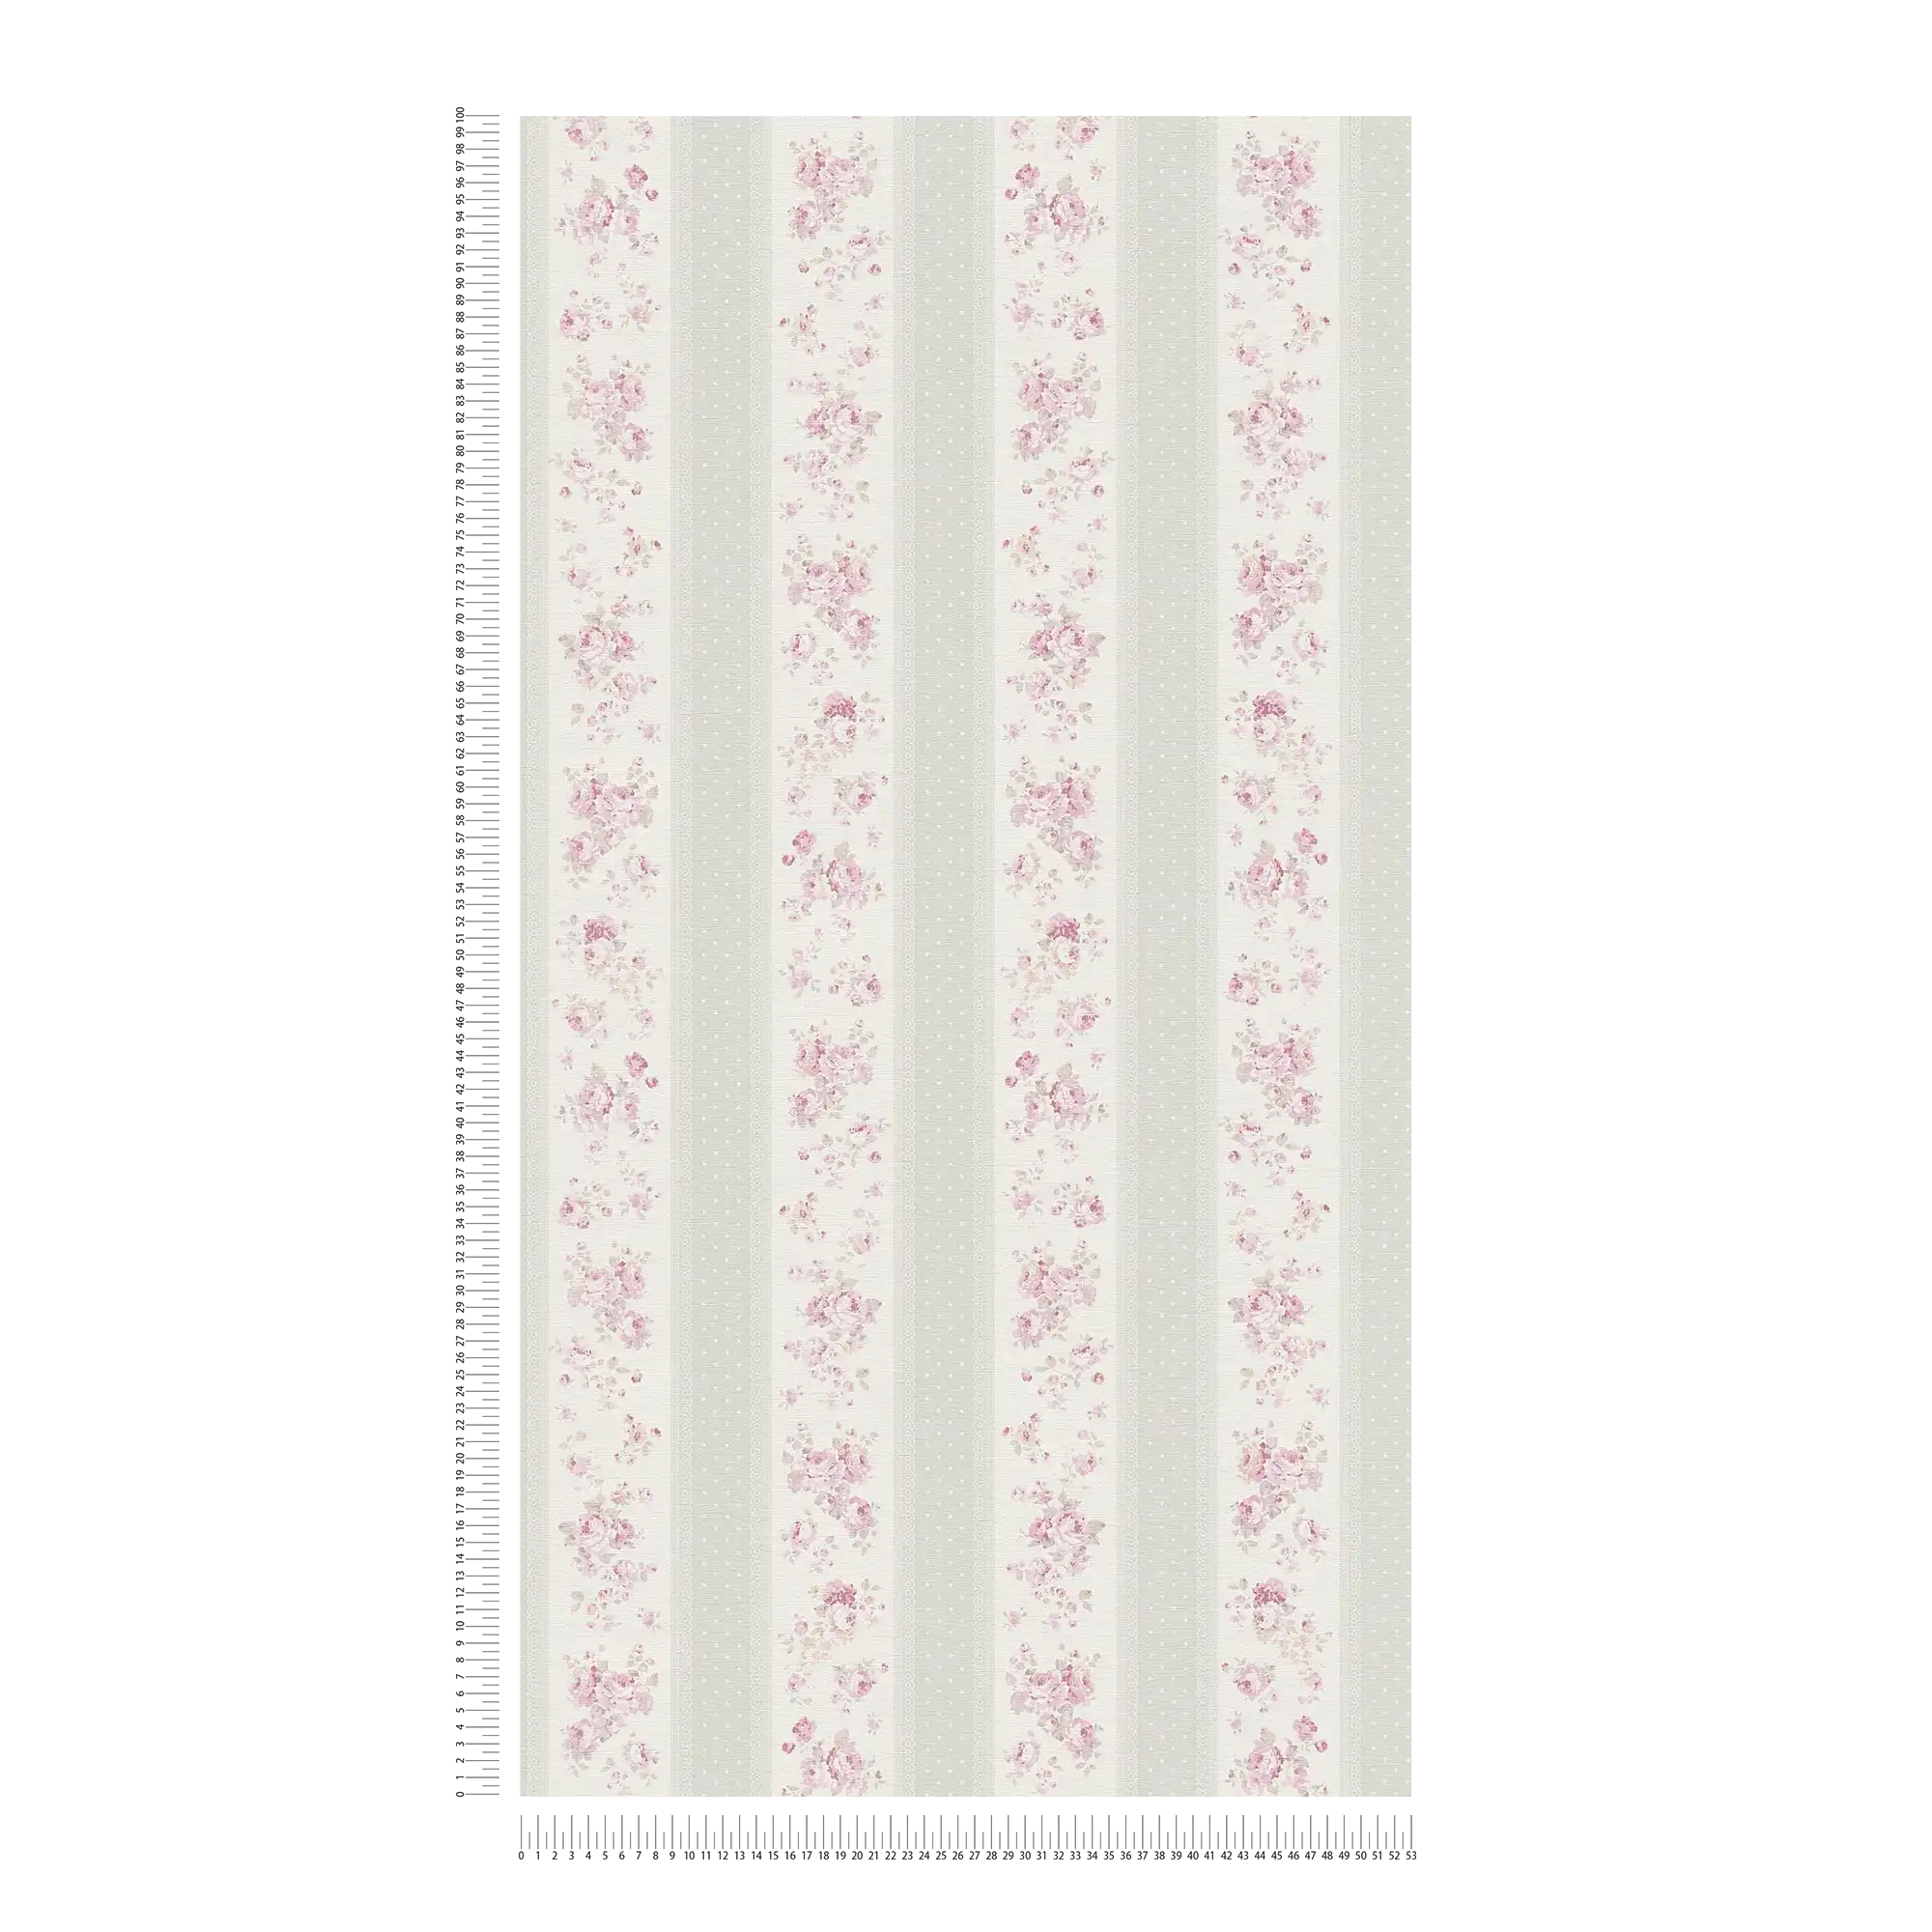             Gestreept behang met bloemen en stippenpatroon - grijs, wit, roze
        